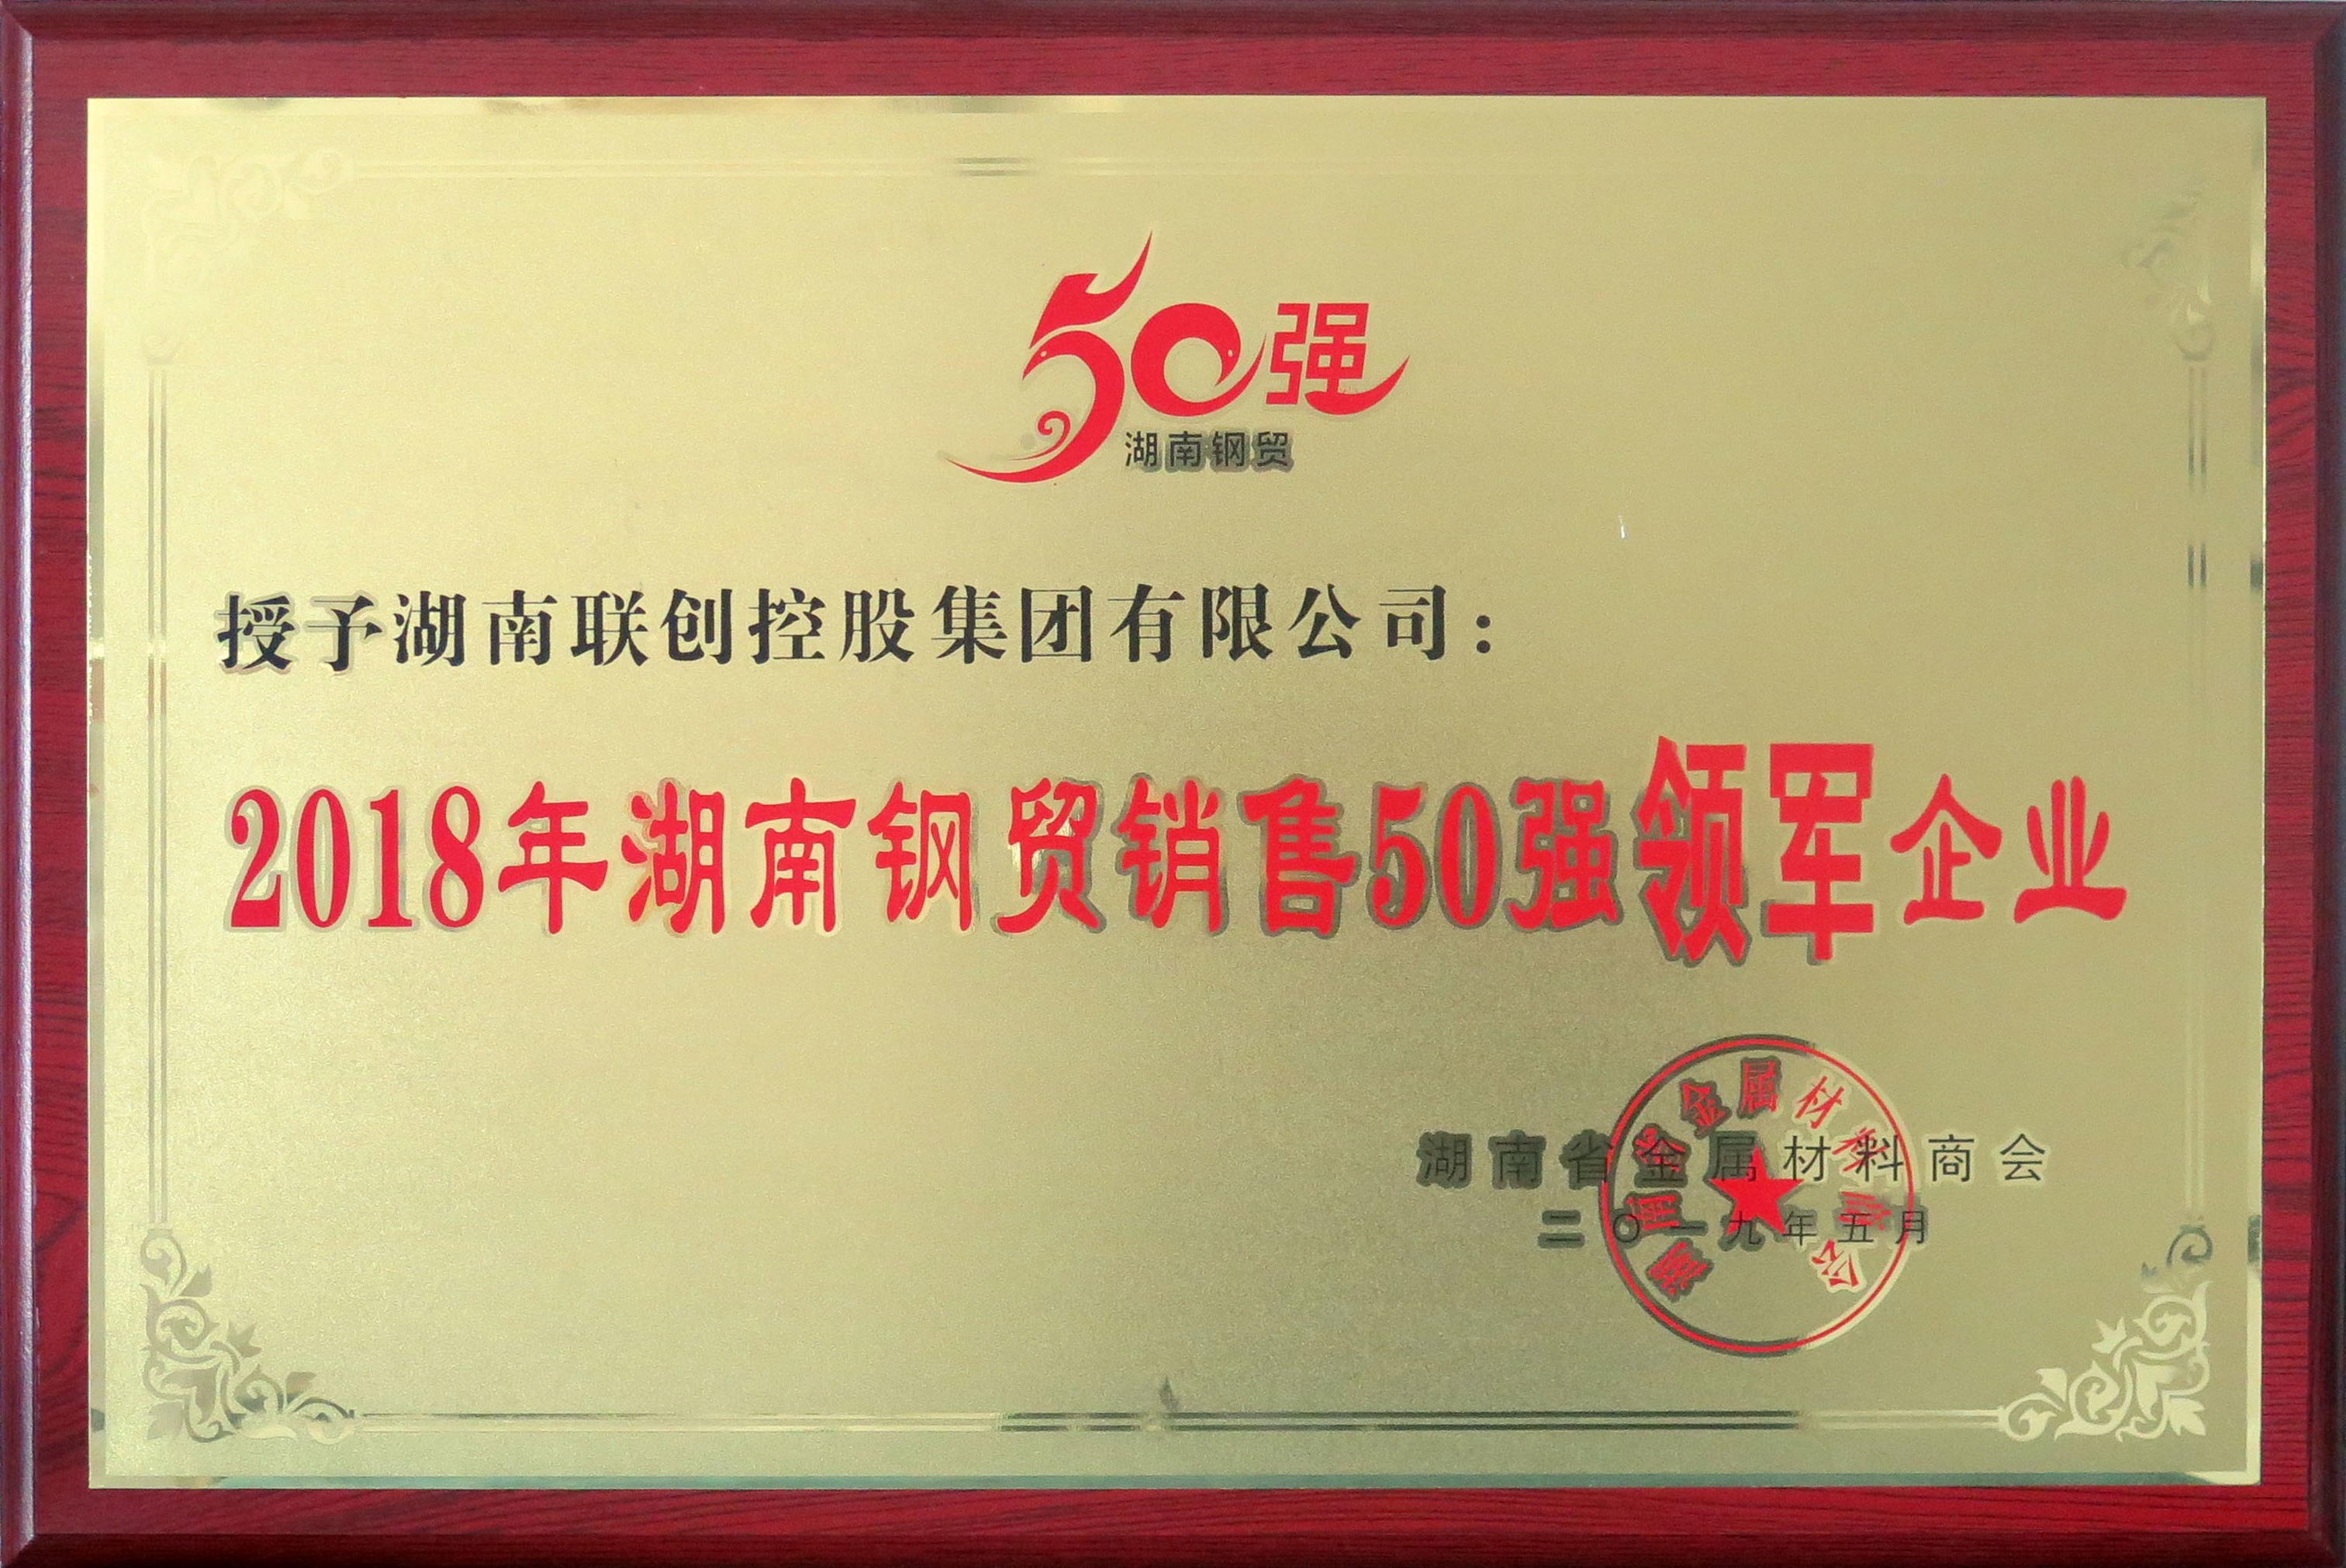 2018年湖南钢贸销售五十强领军企业